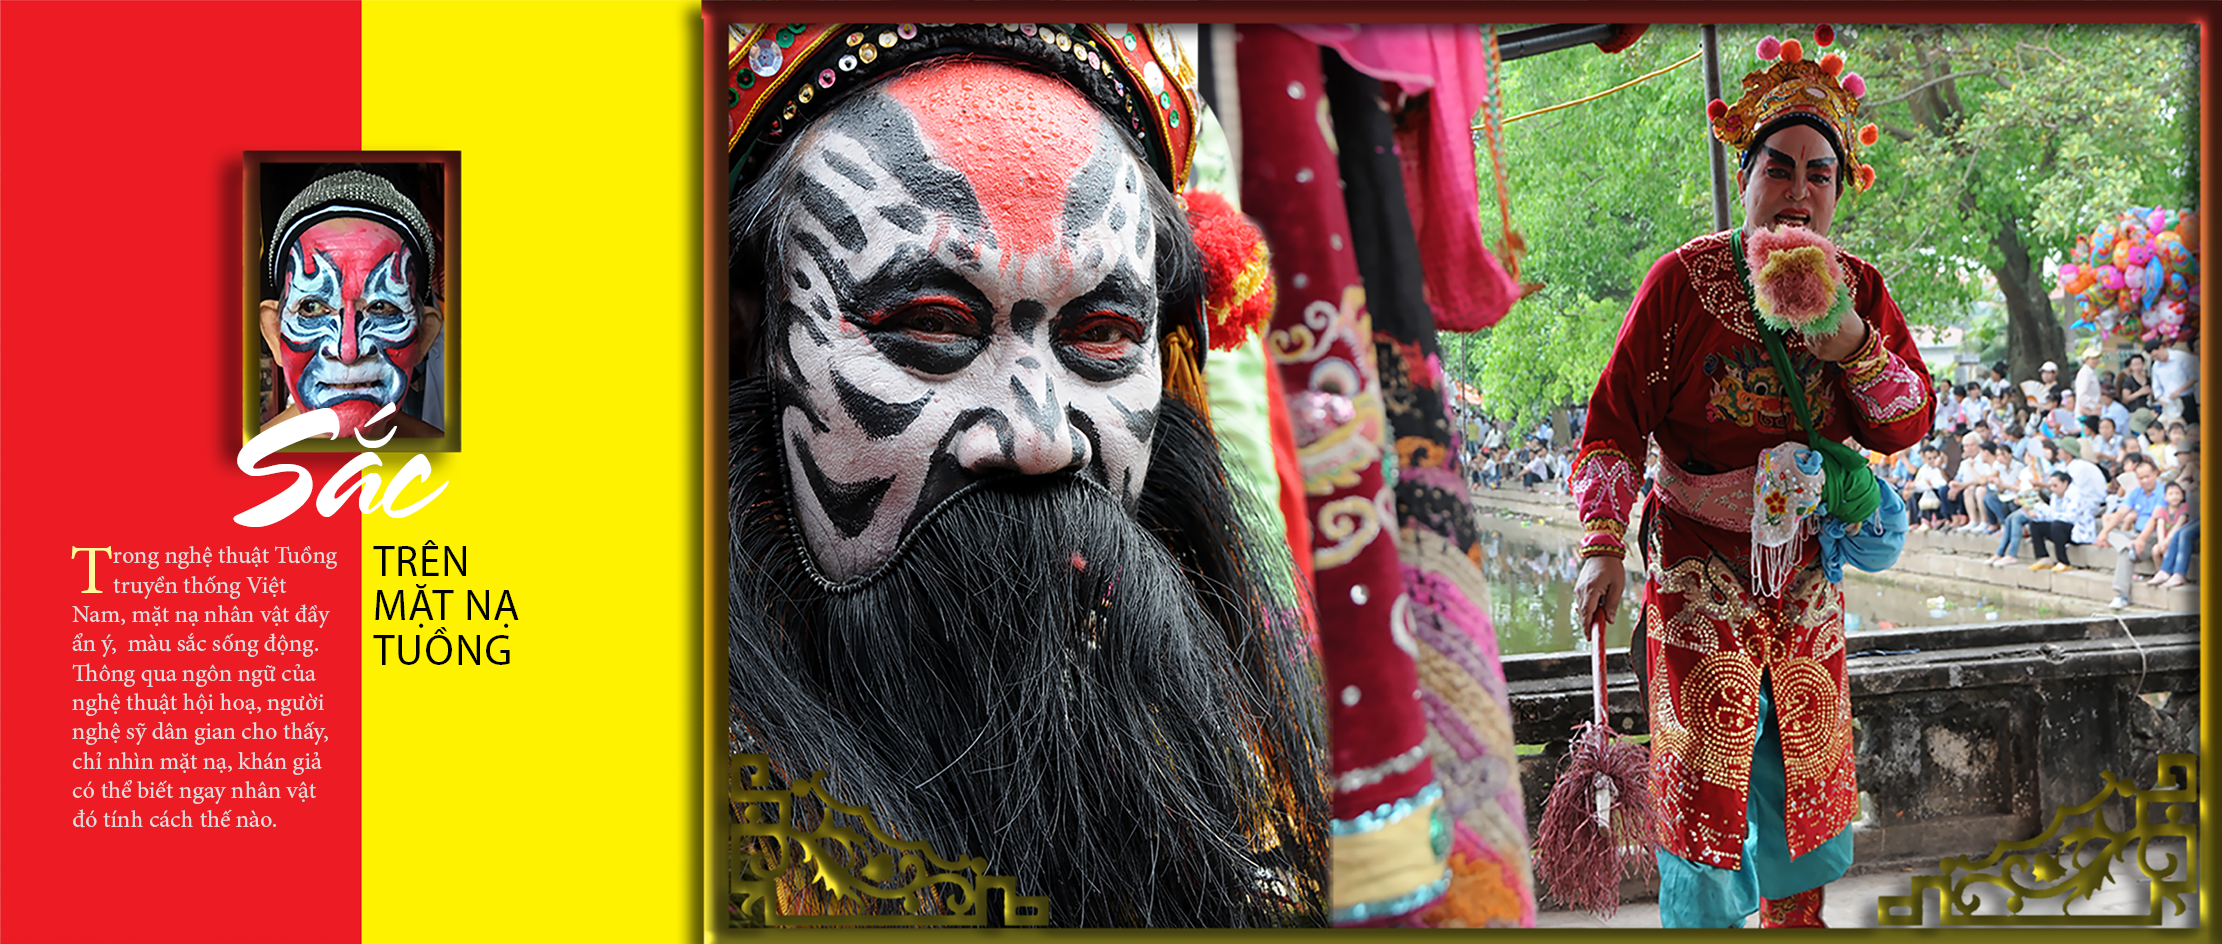 Những mặt nạ tuồng là biểu tượng kéo dài hàng trăm năm của nền văn hóa truyền thống Việt Nam. Với sự kết hợp giữa âm thanh và những bộ trang phục tinh xảo, mặt nạ tuồng hóa thân thành những nhân vật lịch sử hoặc truyền thuyết. Hãy đến và khám phá hình ảnh thần linh mạnh mẽ được tái hiện trong những chiếc mặt nạ này!